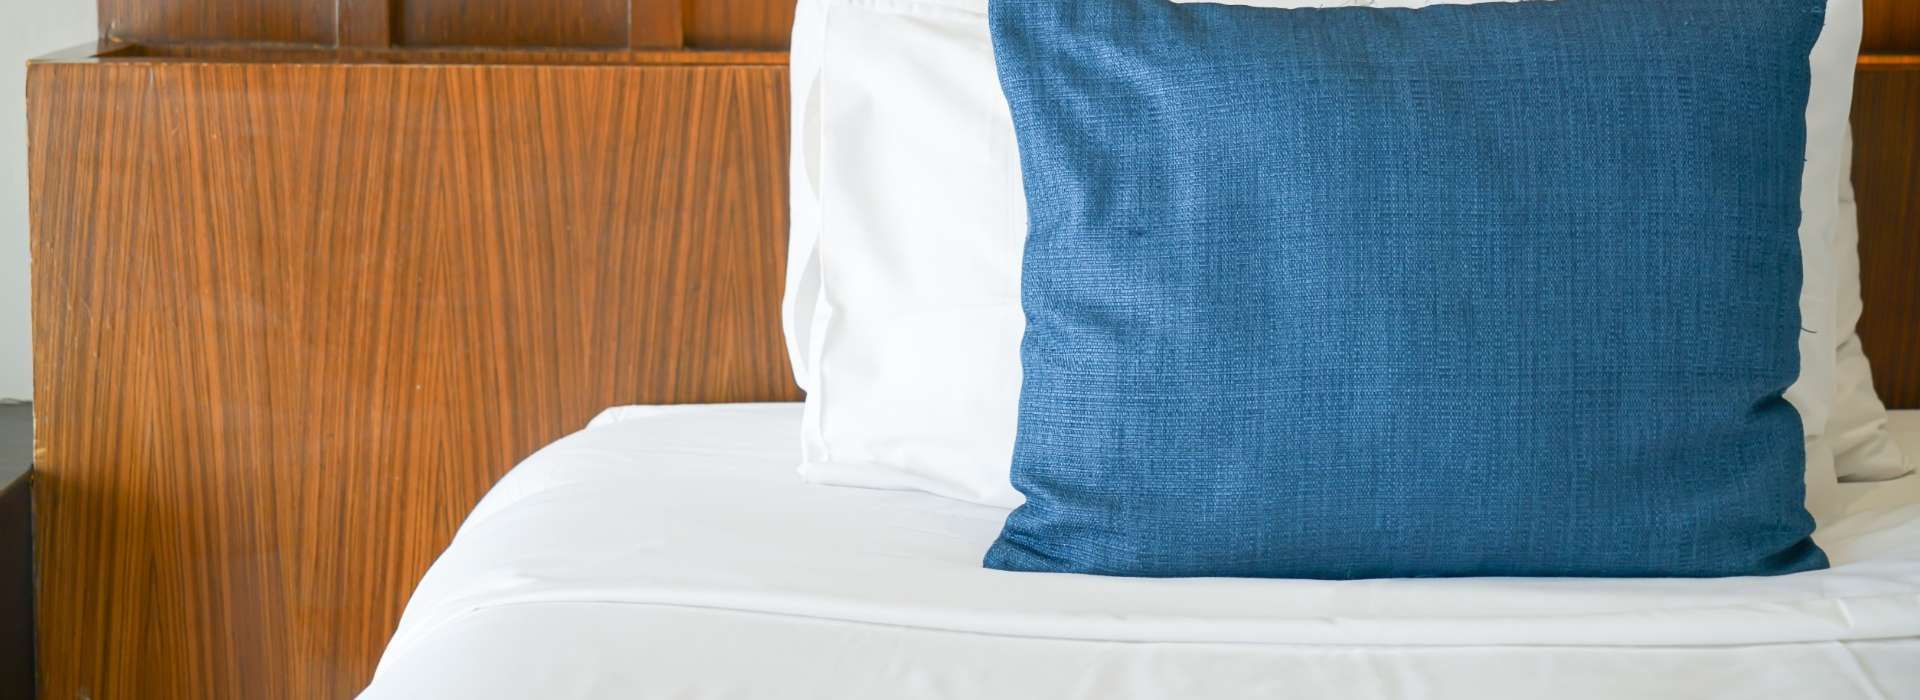 Cama con almohada blanca y otra azul